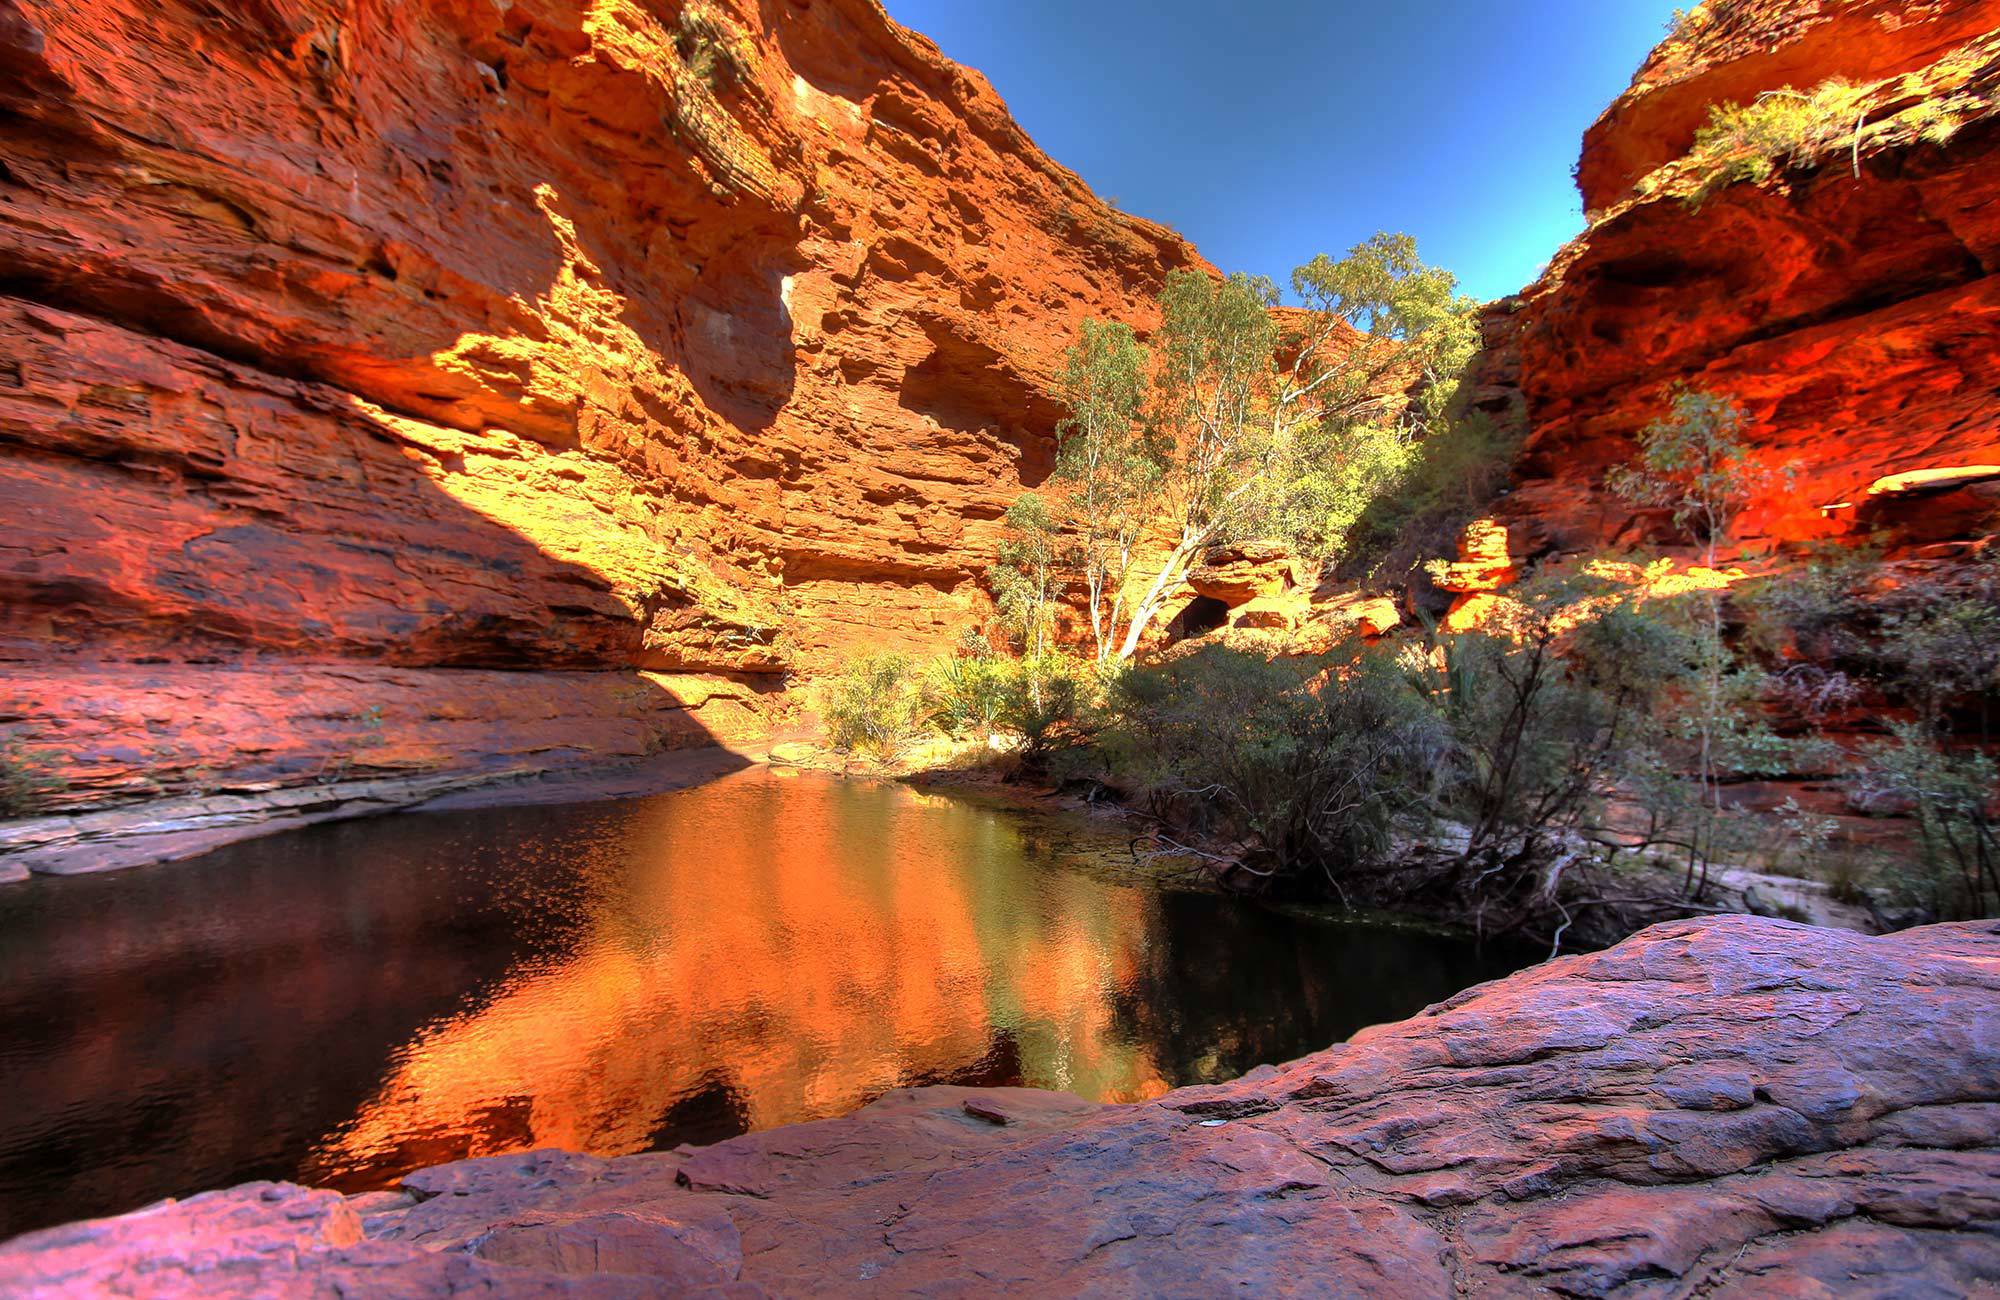 Zonlicht schijnt in Kings Canyon | Rondreis Noord-Australië | KILROY